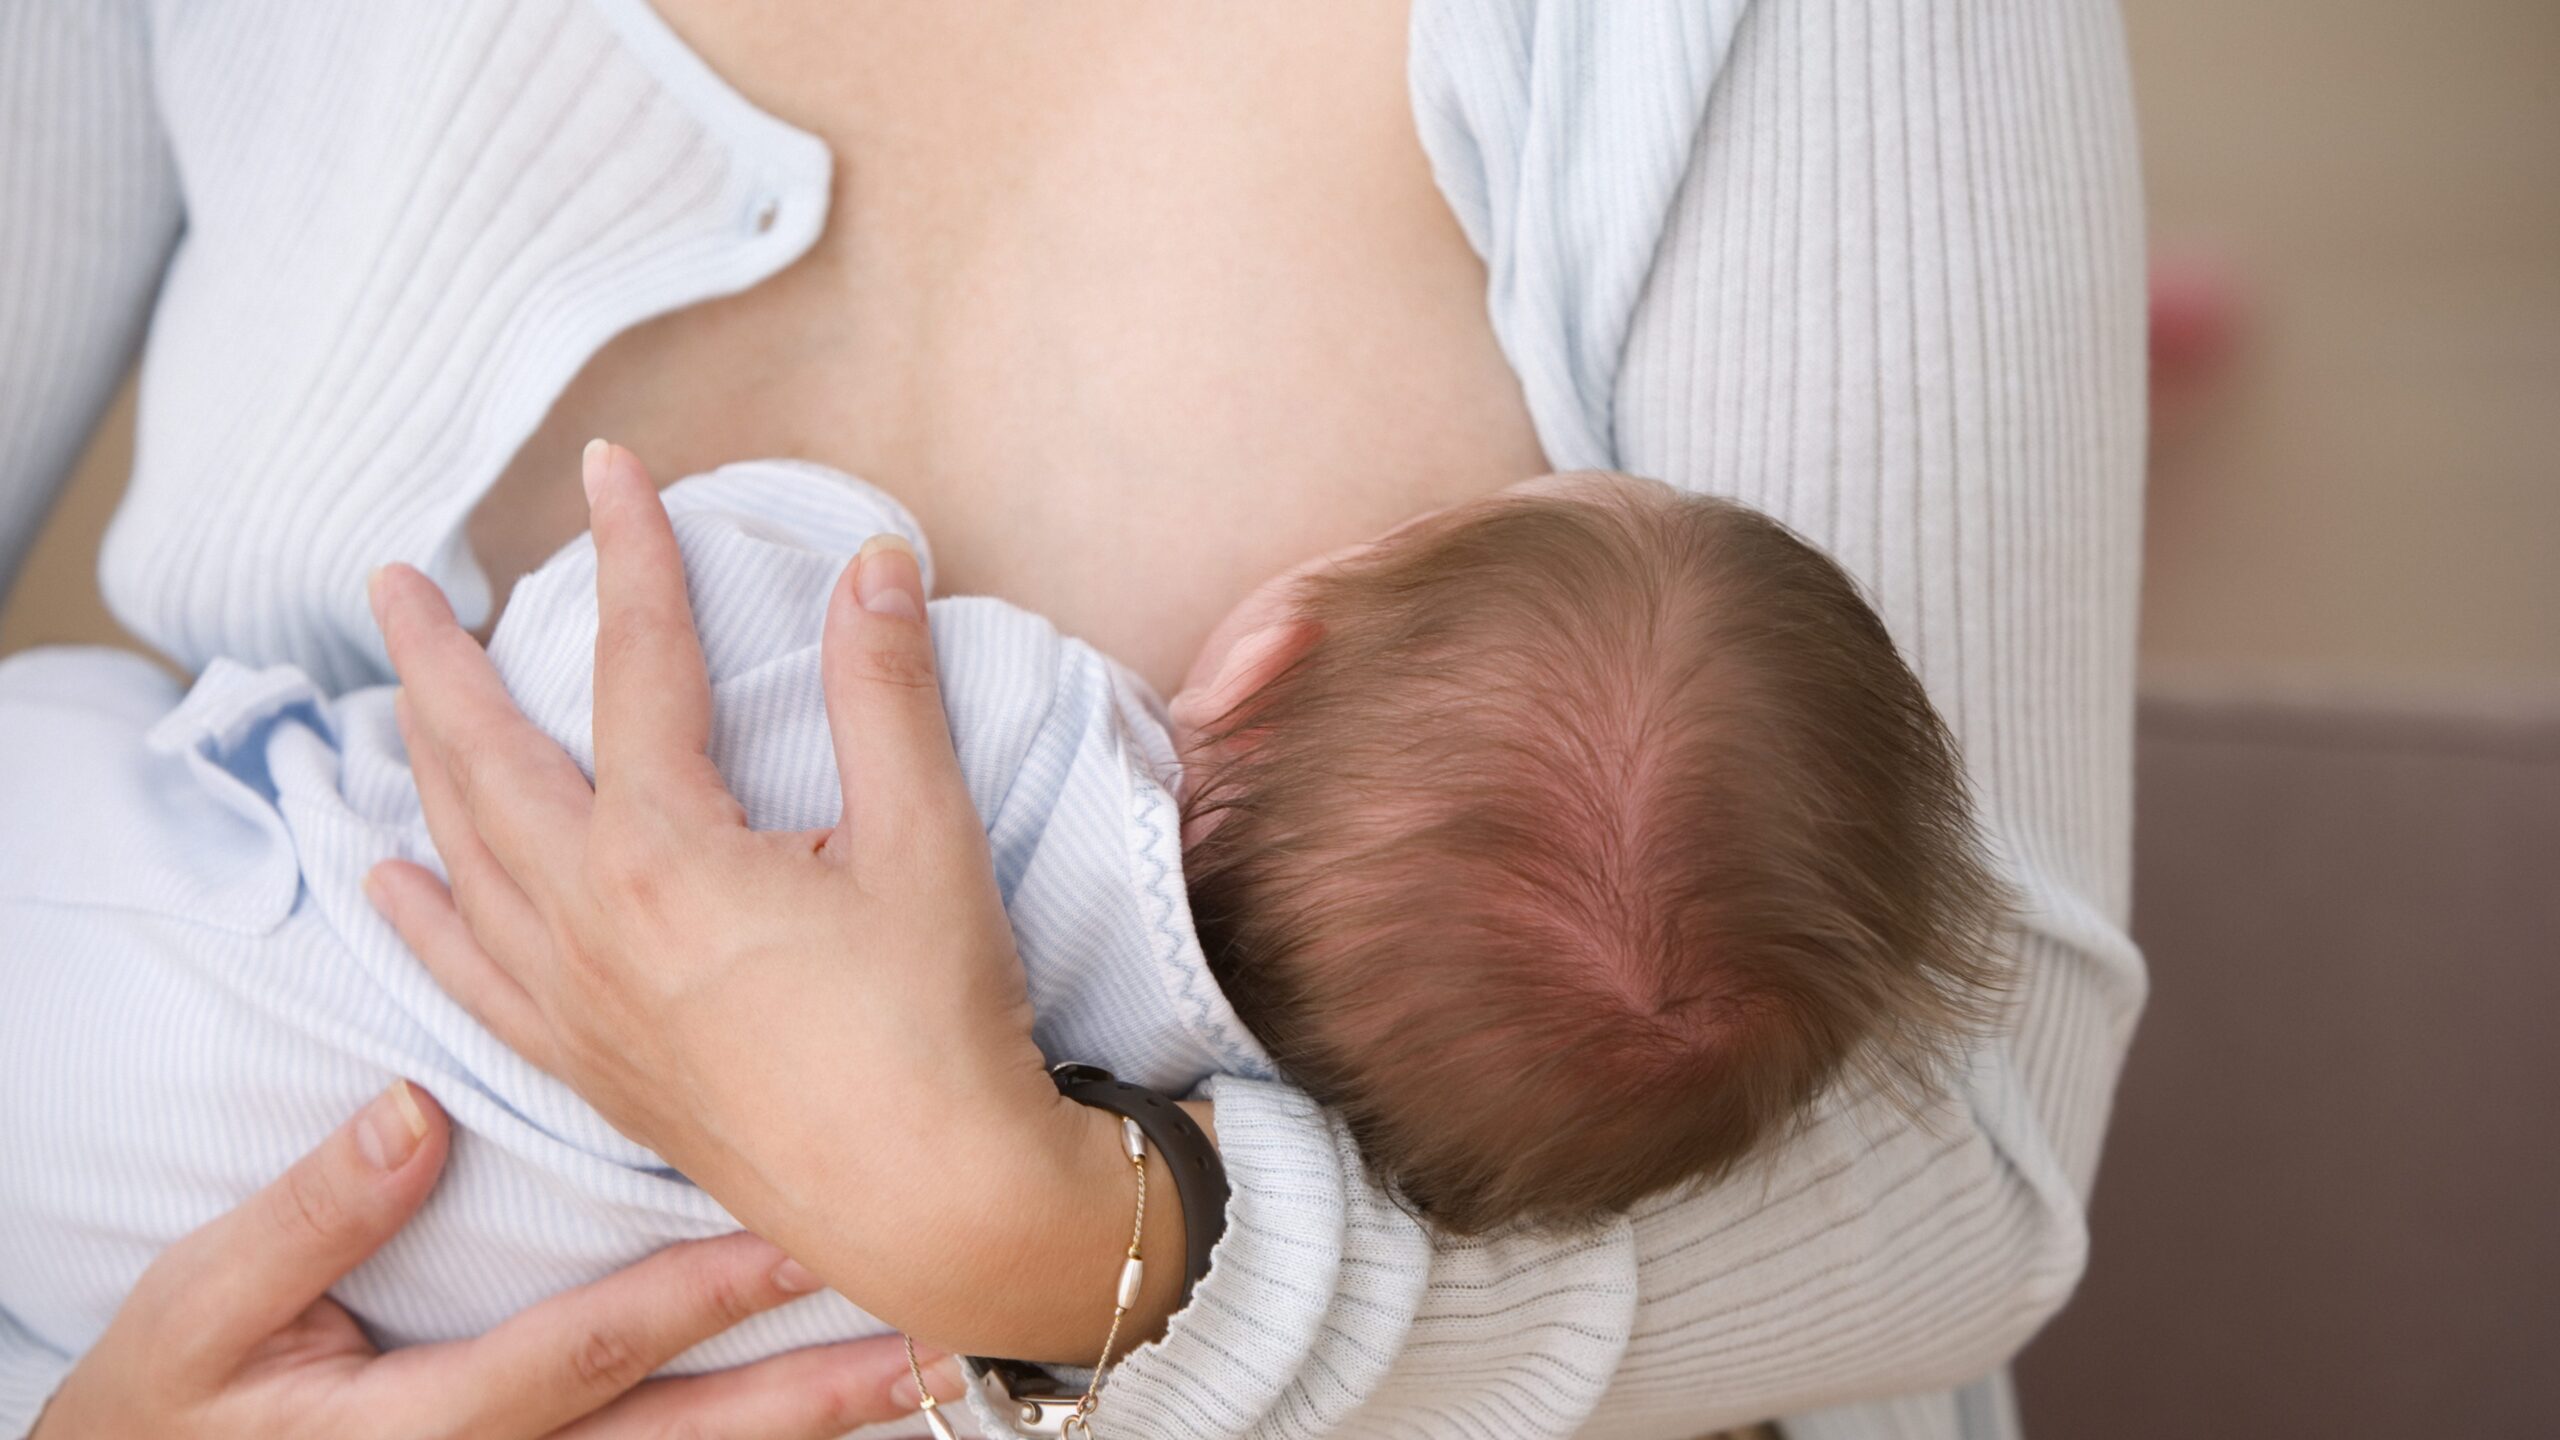 La leche materna de mujeres vacunadas con Pfizer contiene anticuerpos contra el SARS-CoV-2